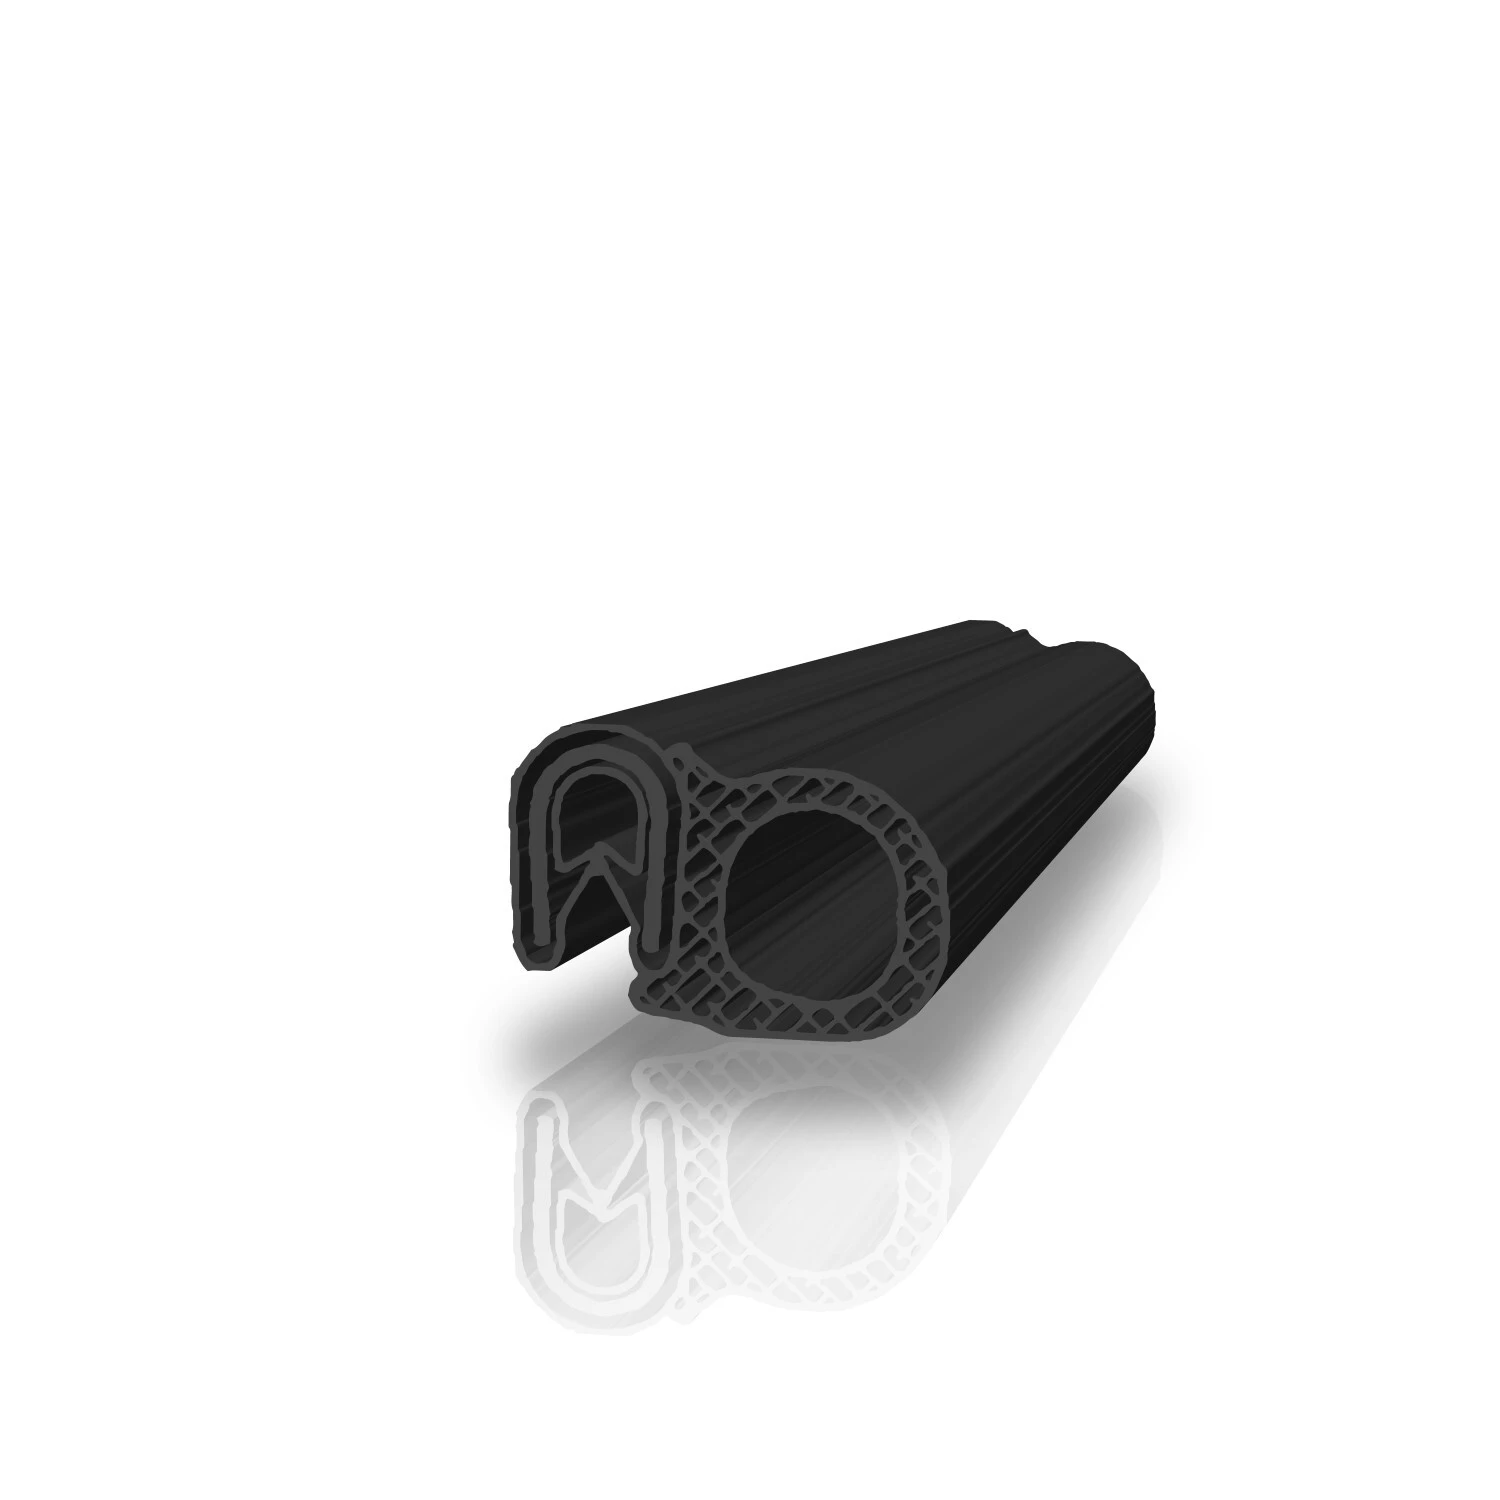 Kantenschutz mit Stahleinlage für 2-5mm Bleche Farbe schwarz mit